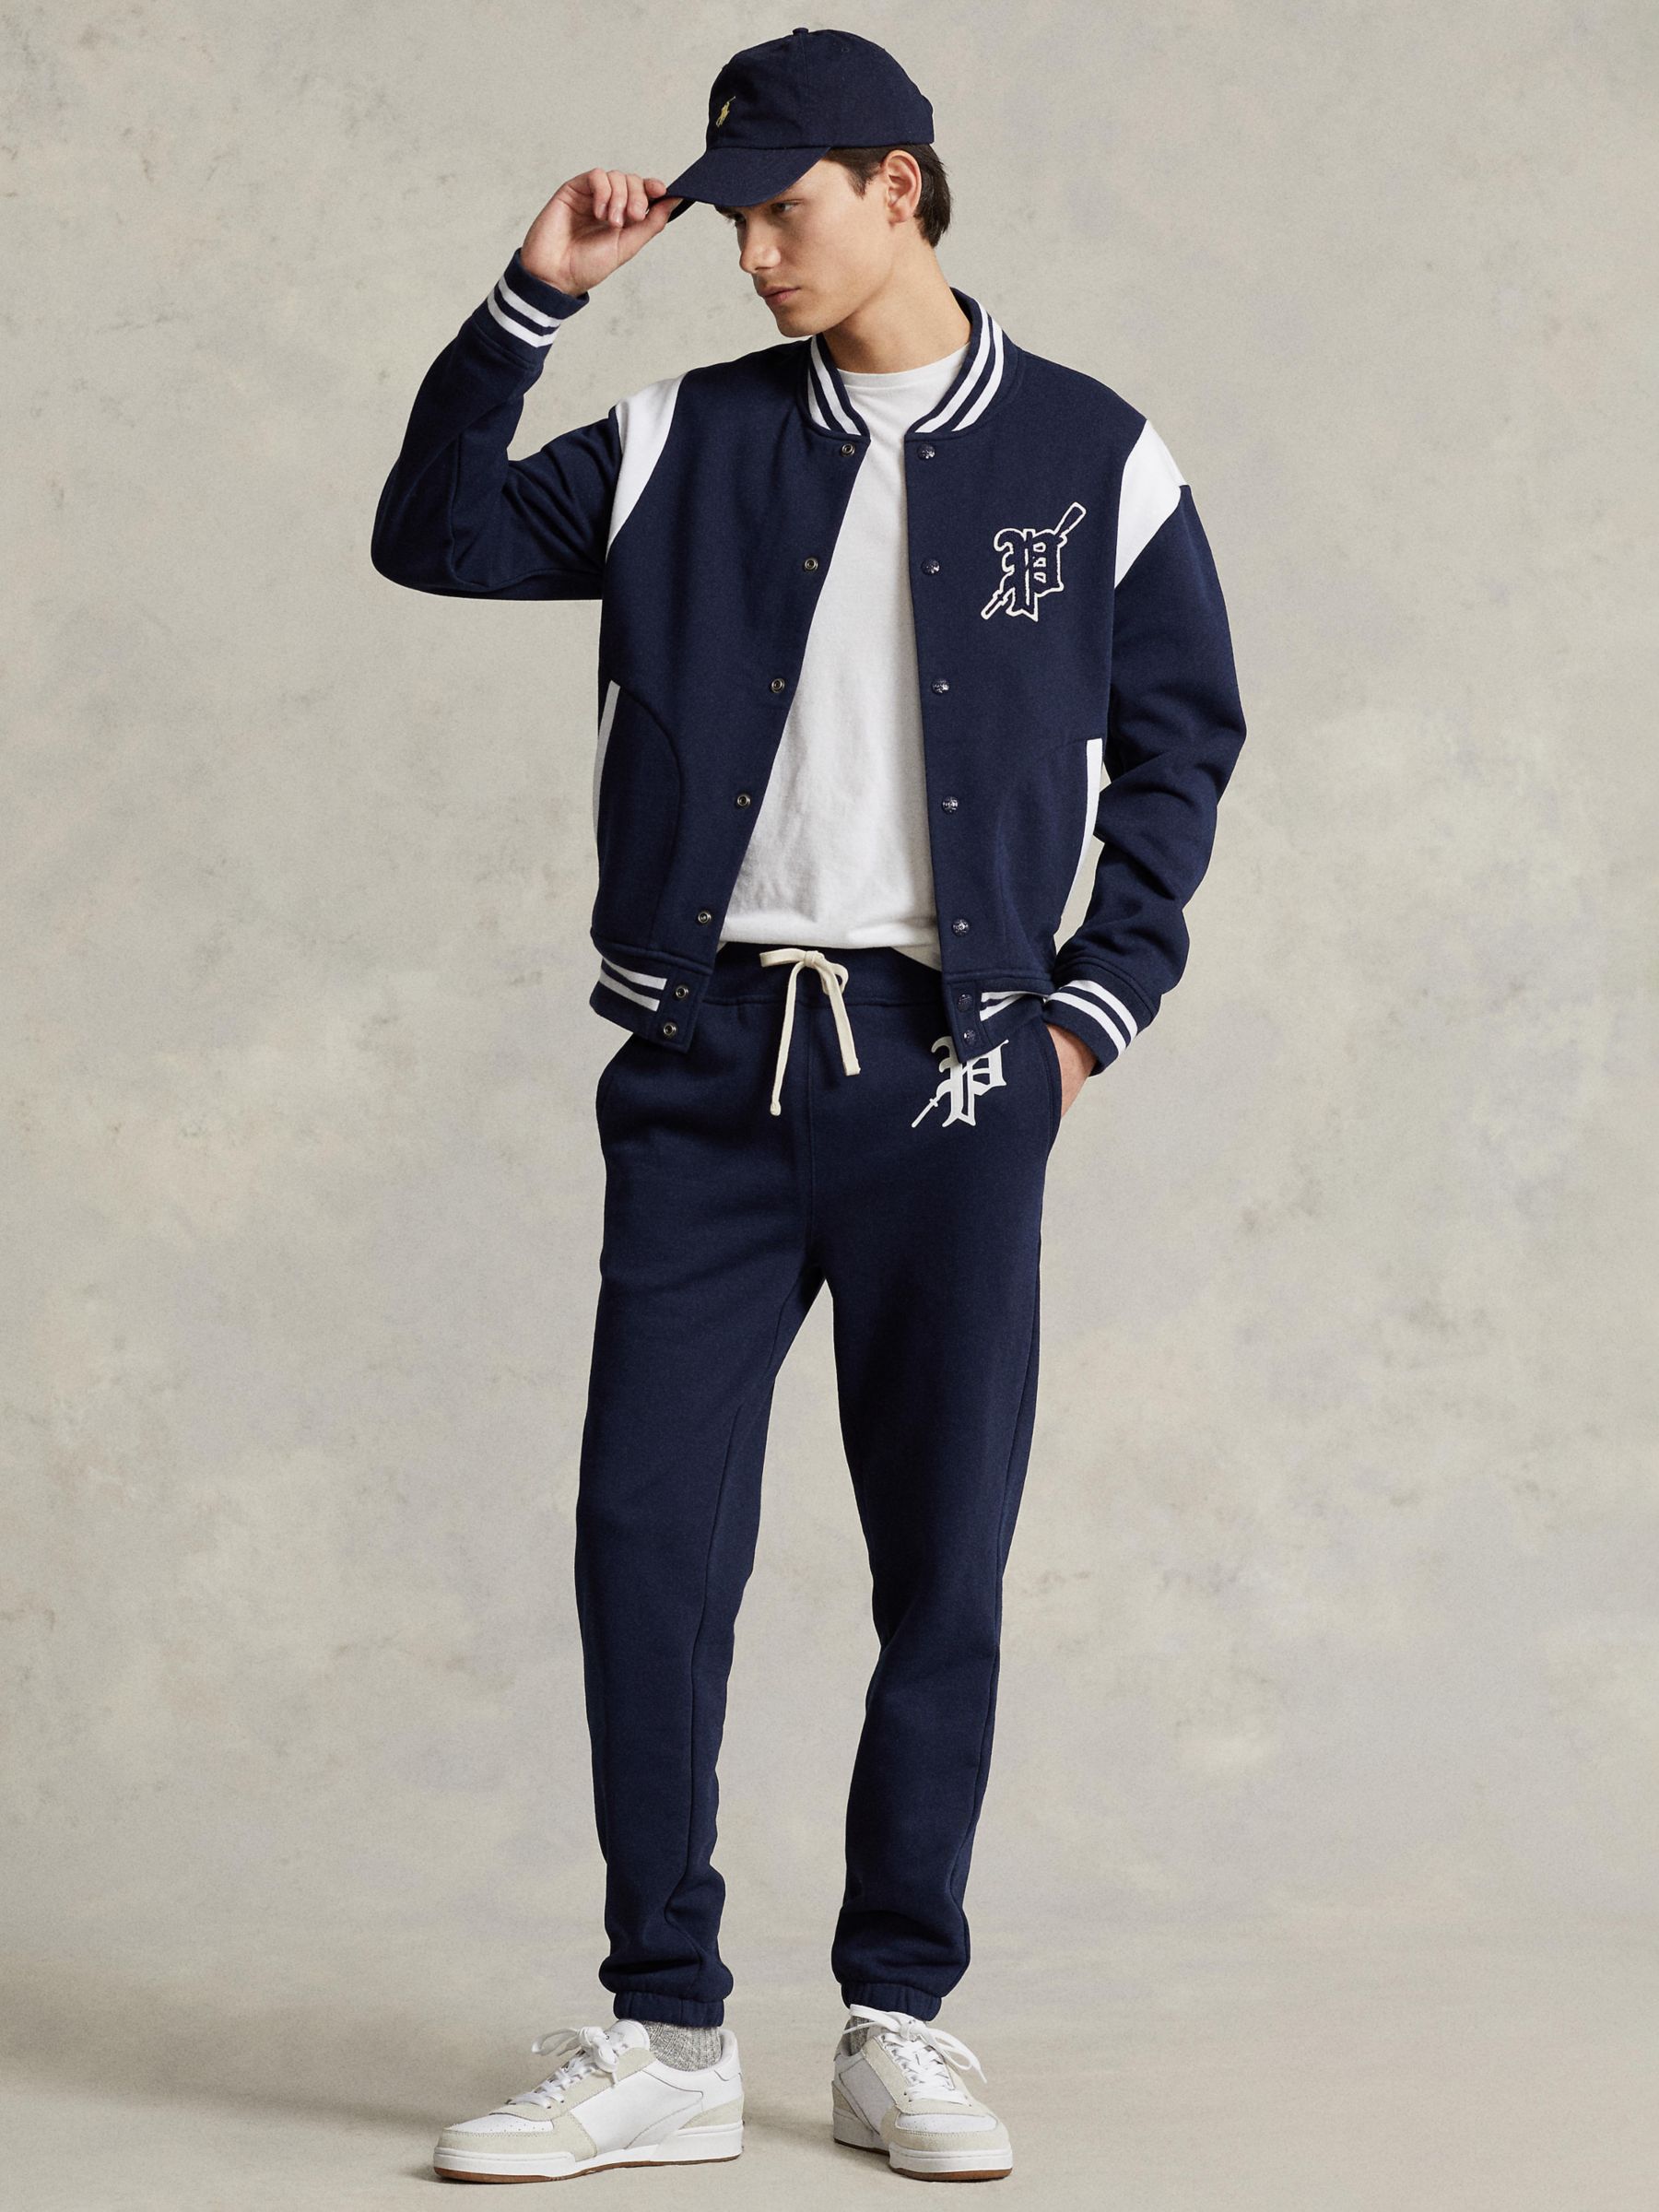 Men's Coats & Jackets - Ralph Lauren, Insulated | John Lewis & Partners